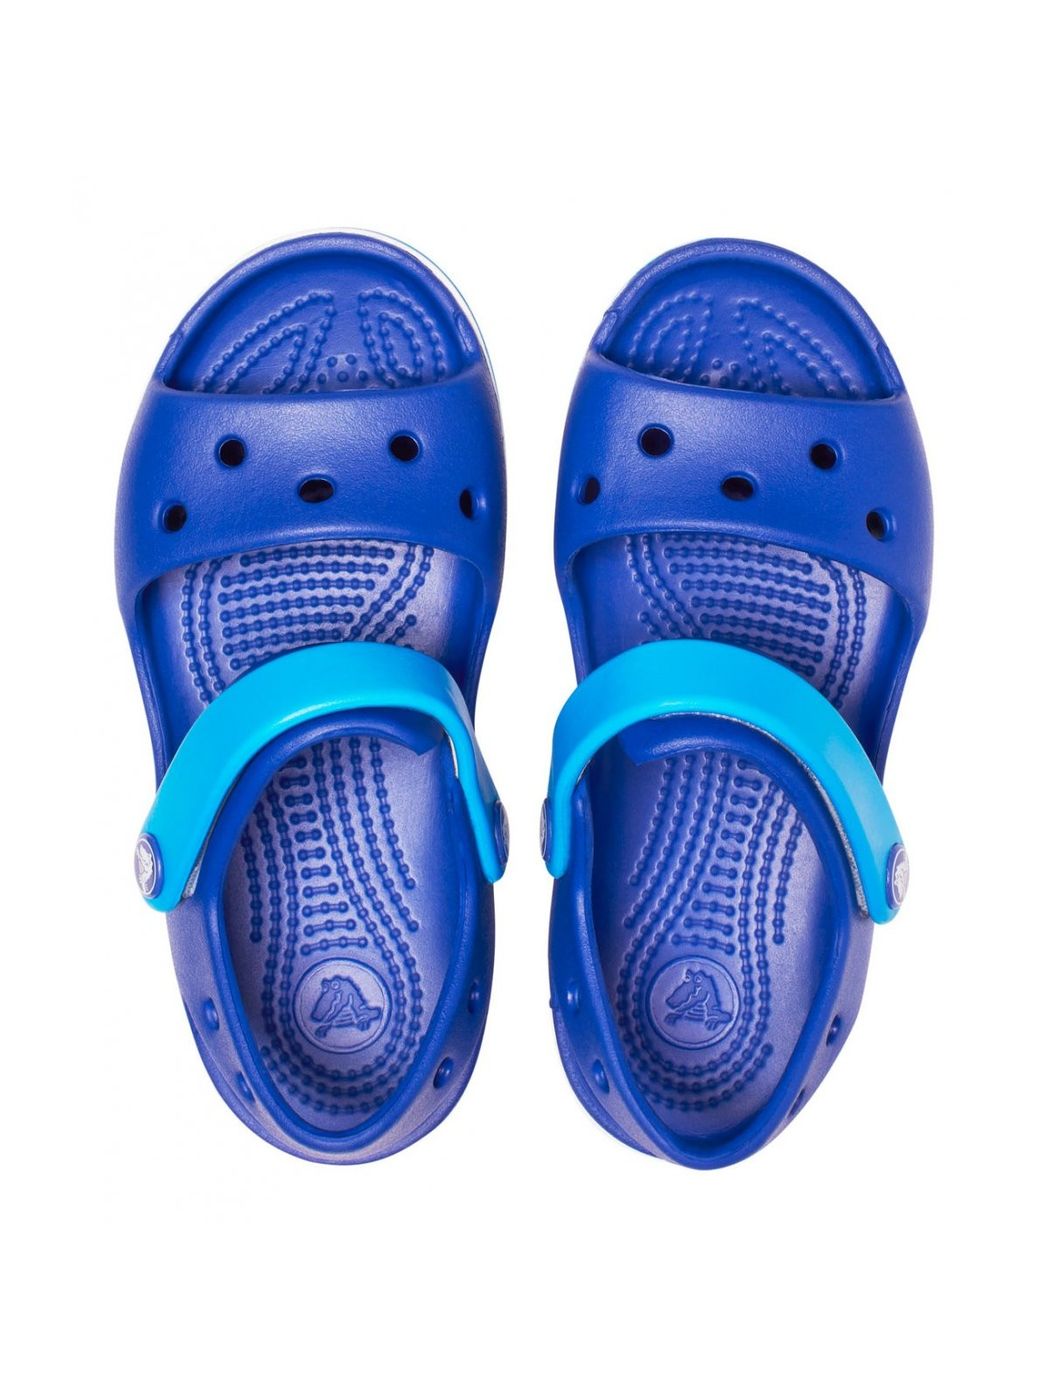 CROCS Sandales Sandales Crocband pour enfants et adolescents 12856 4BX Bleu